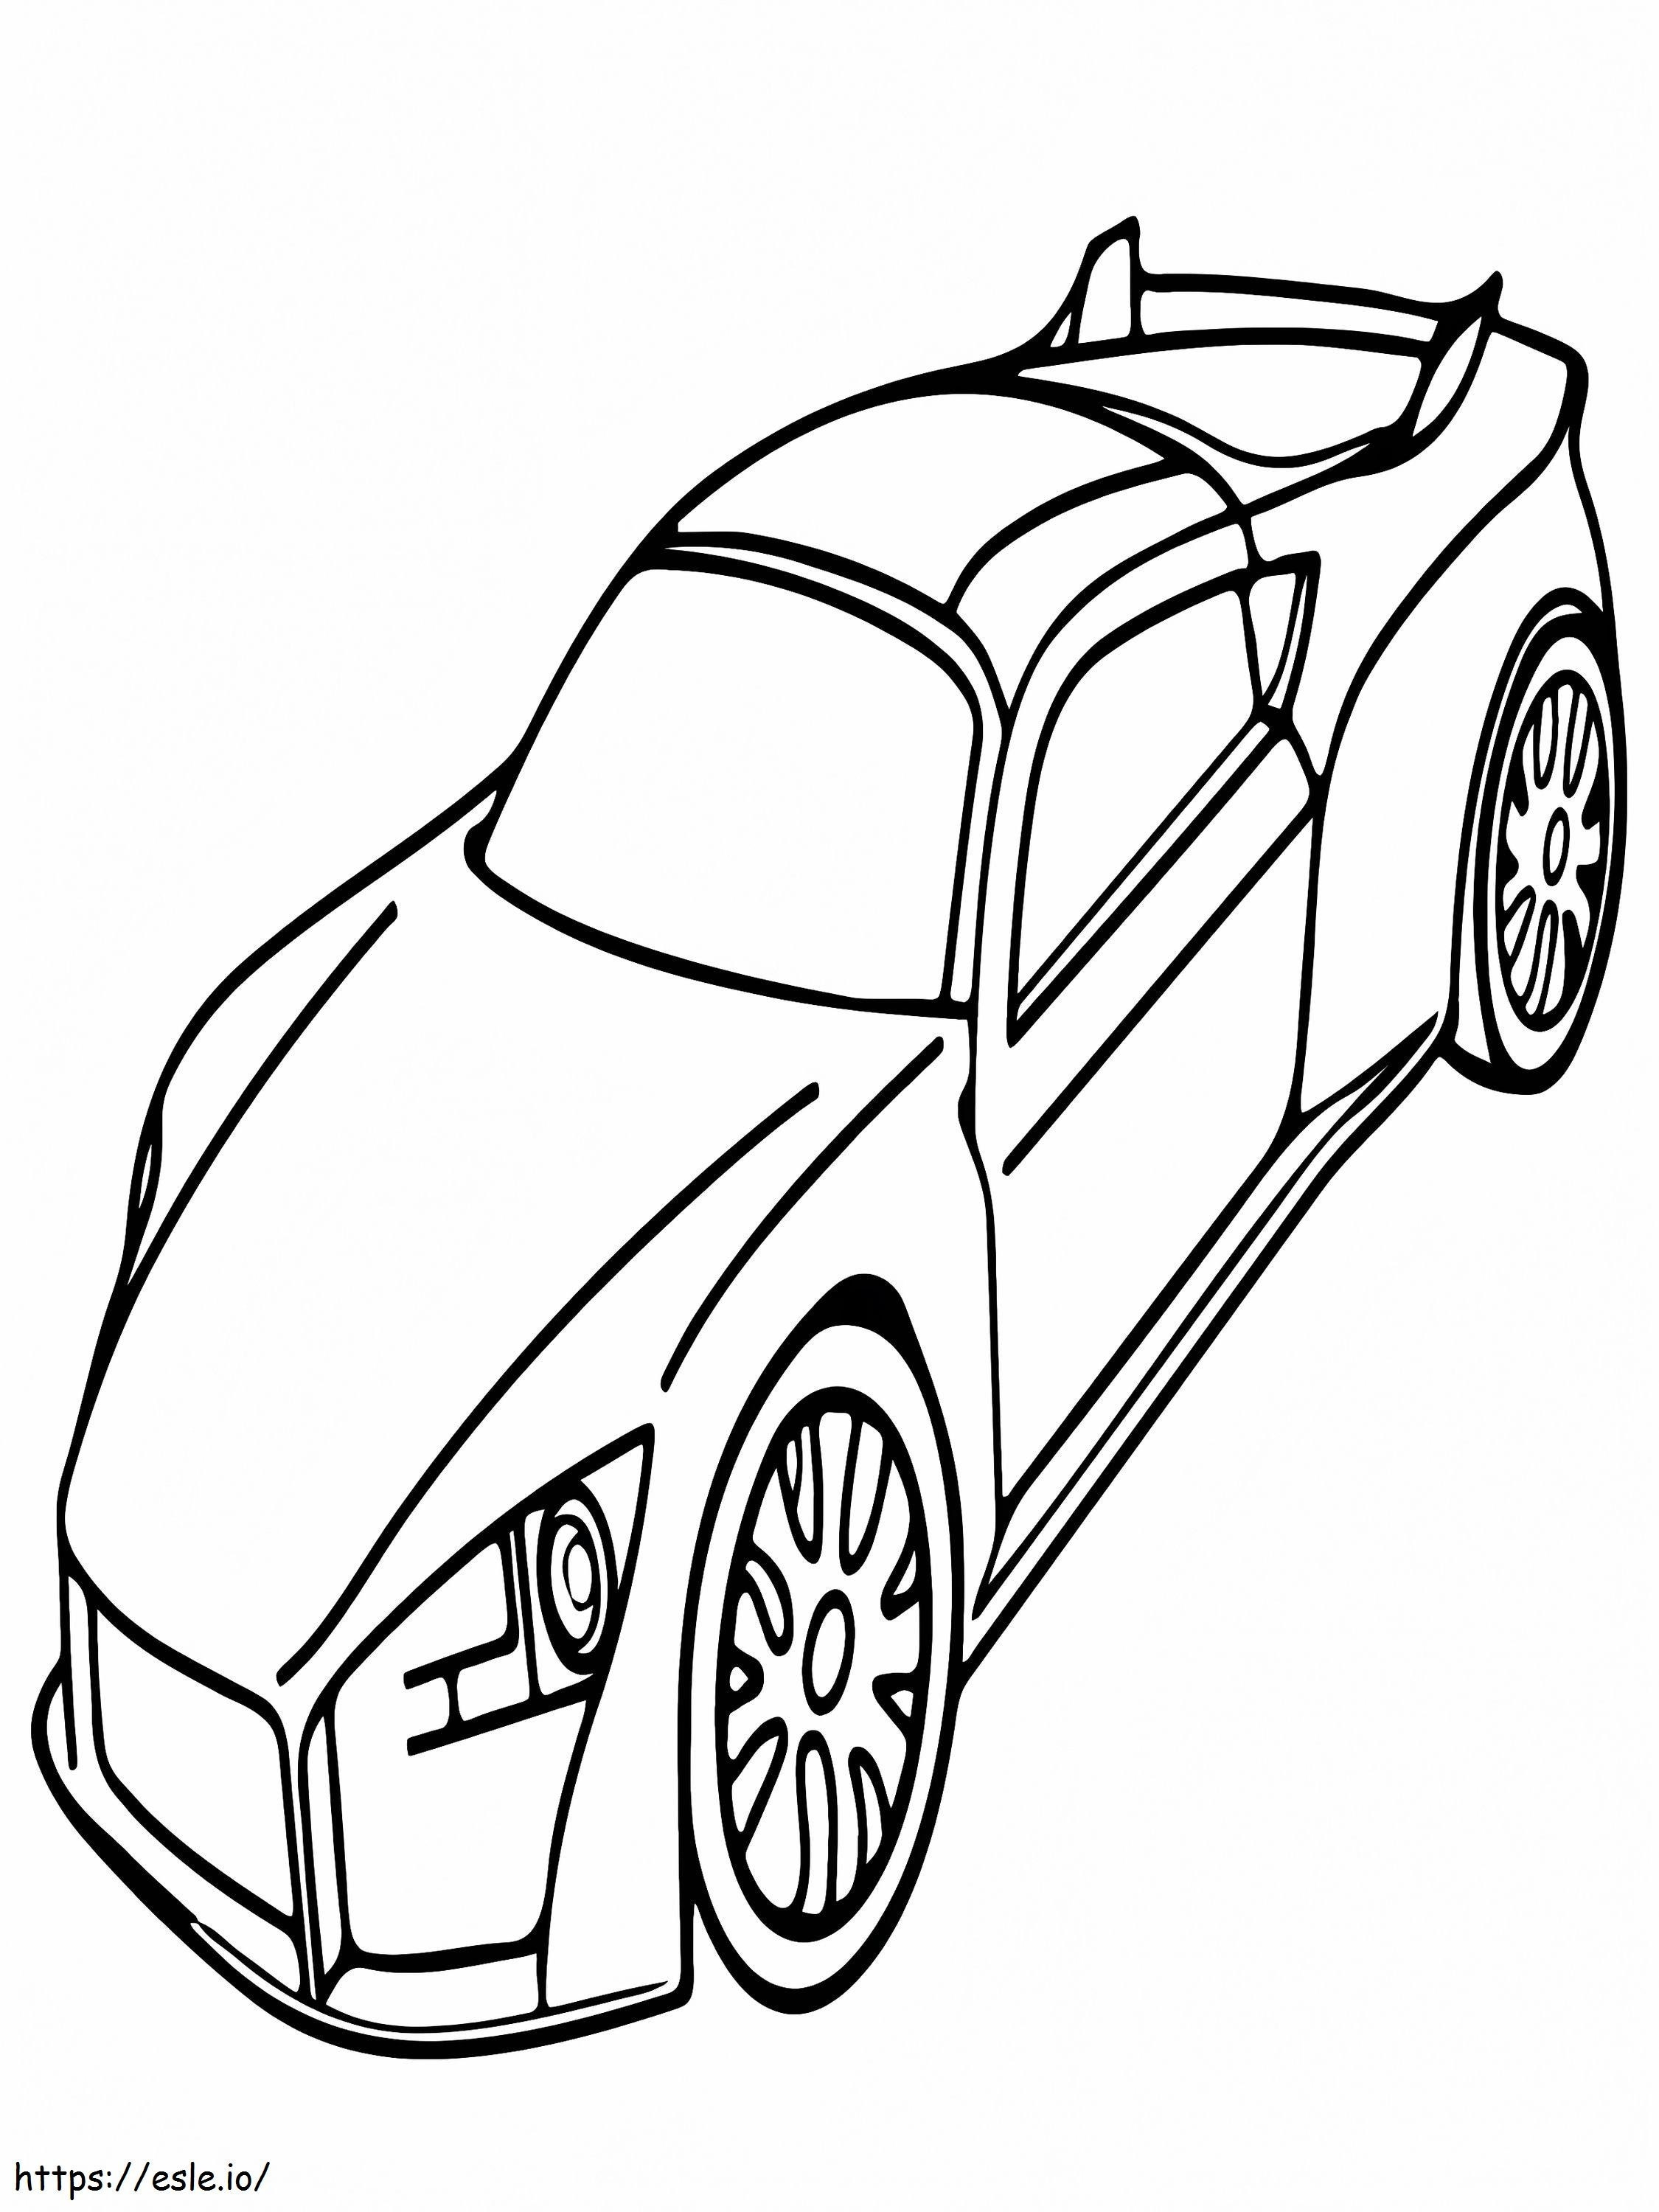 Einfaches Sportwagendesign ausmalbilder